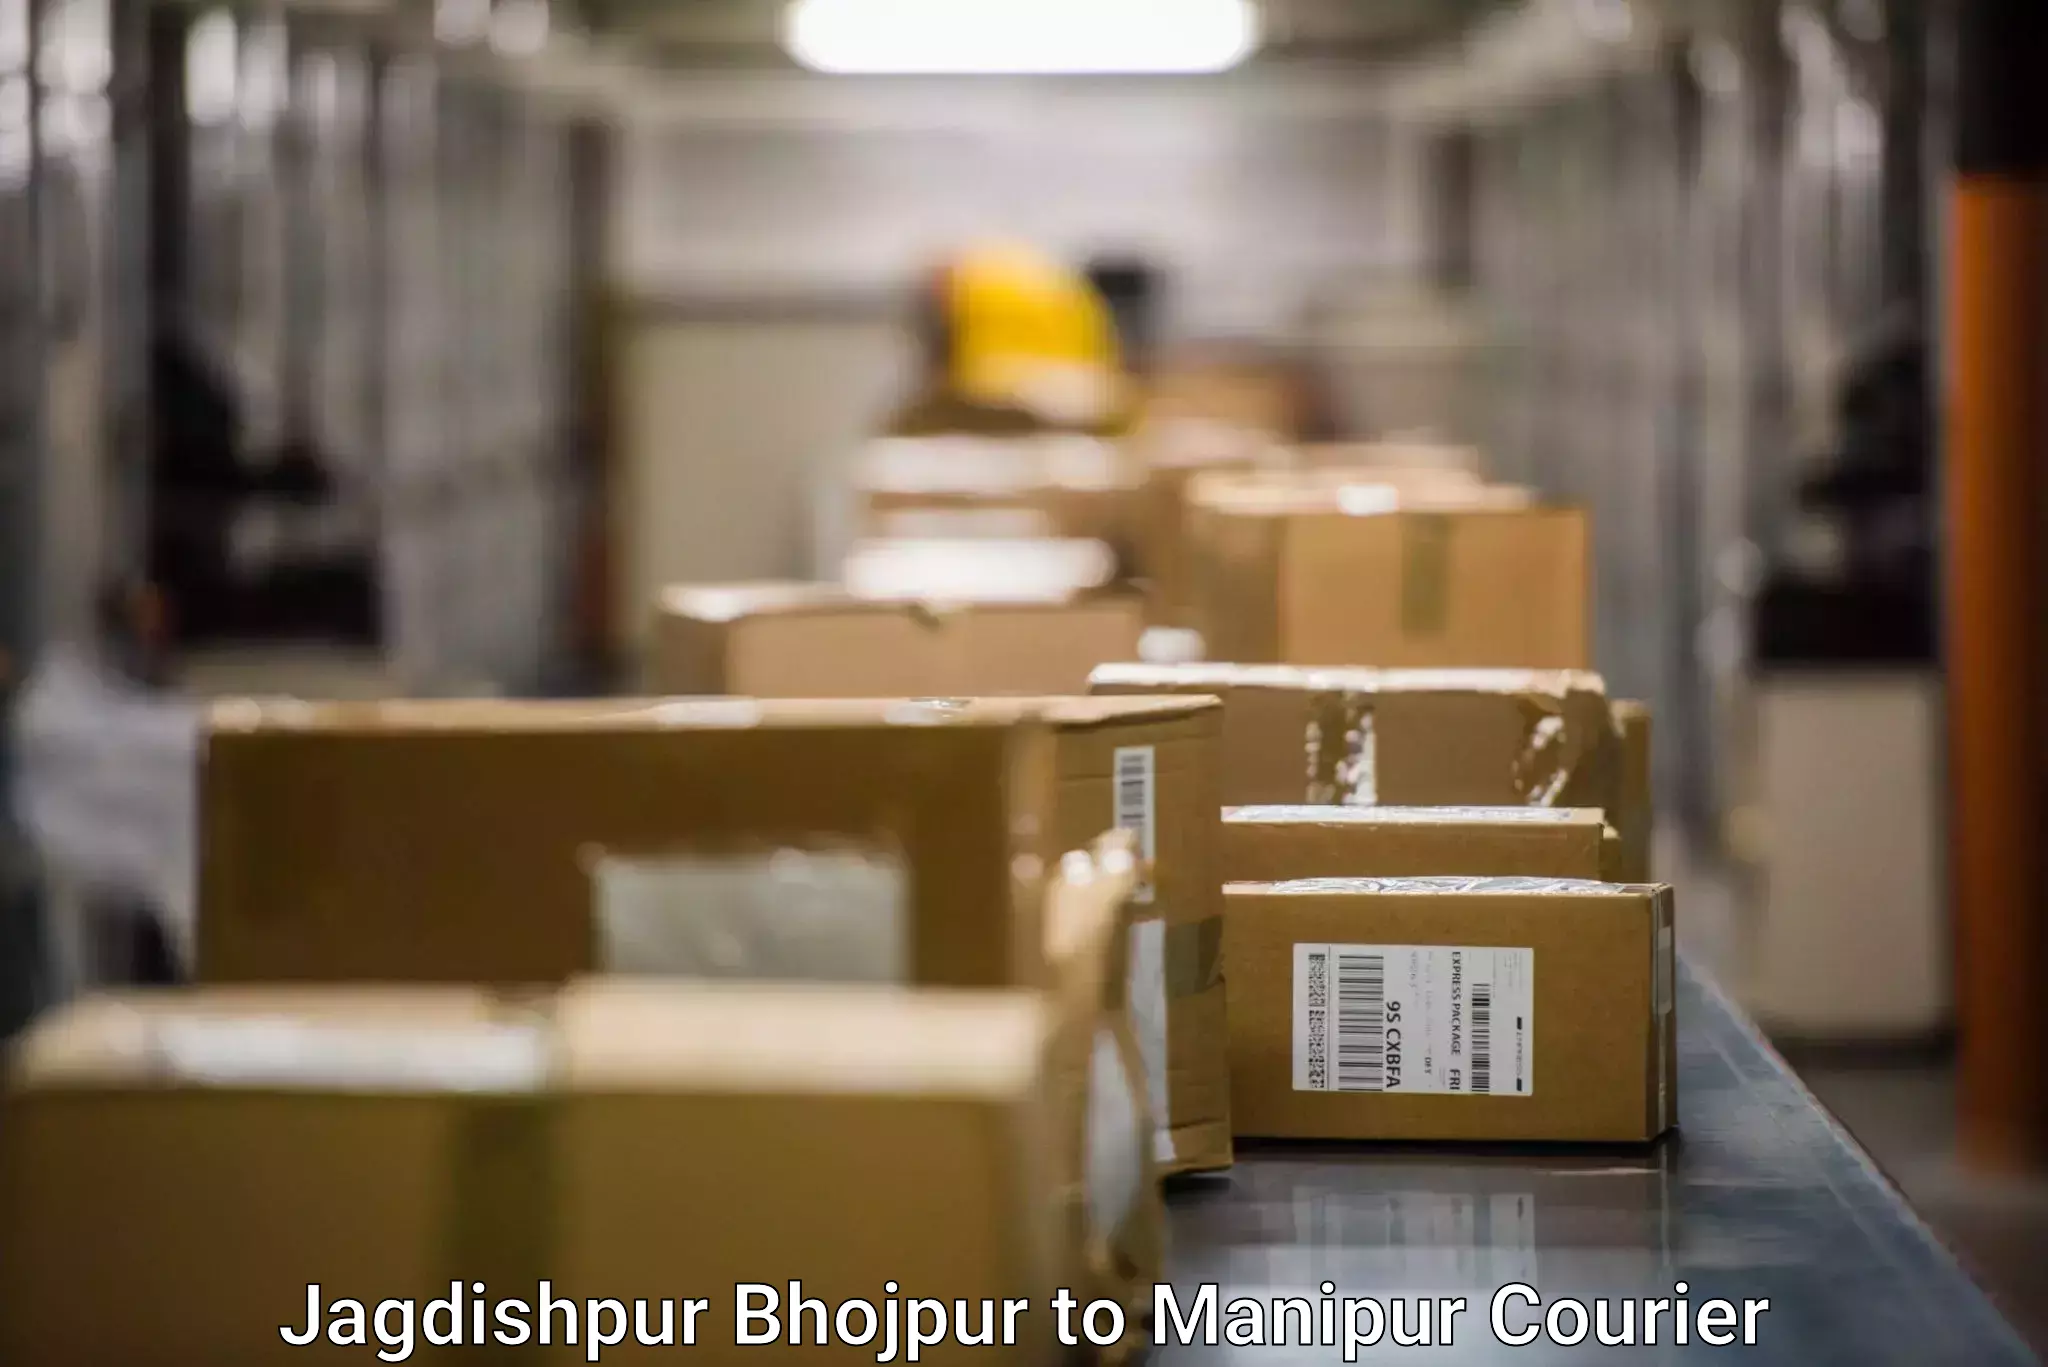 Express mail solutions Jagdishpur Bhojpur to Moirang